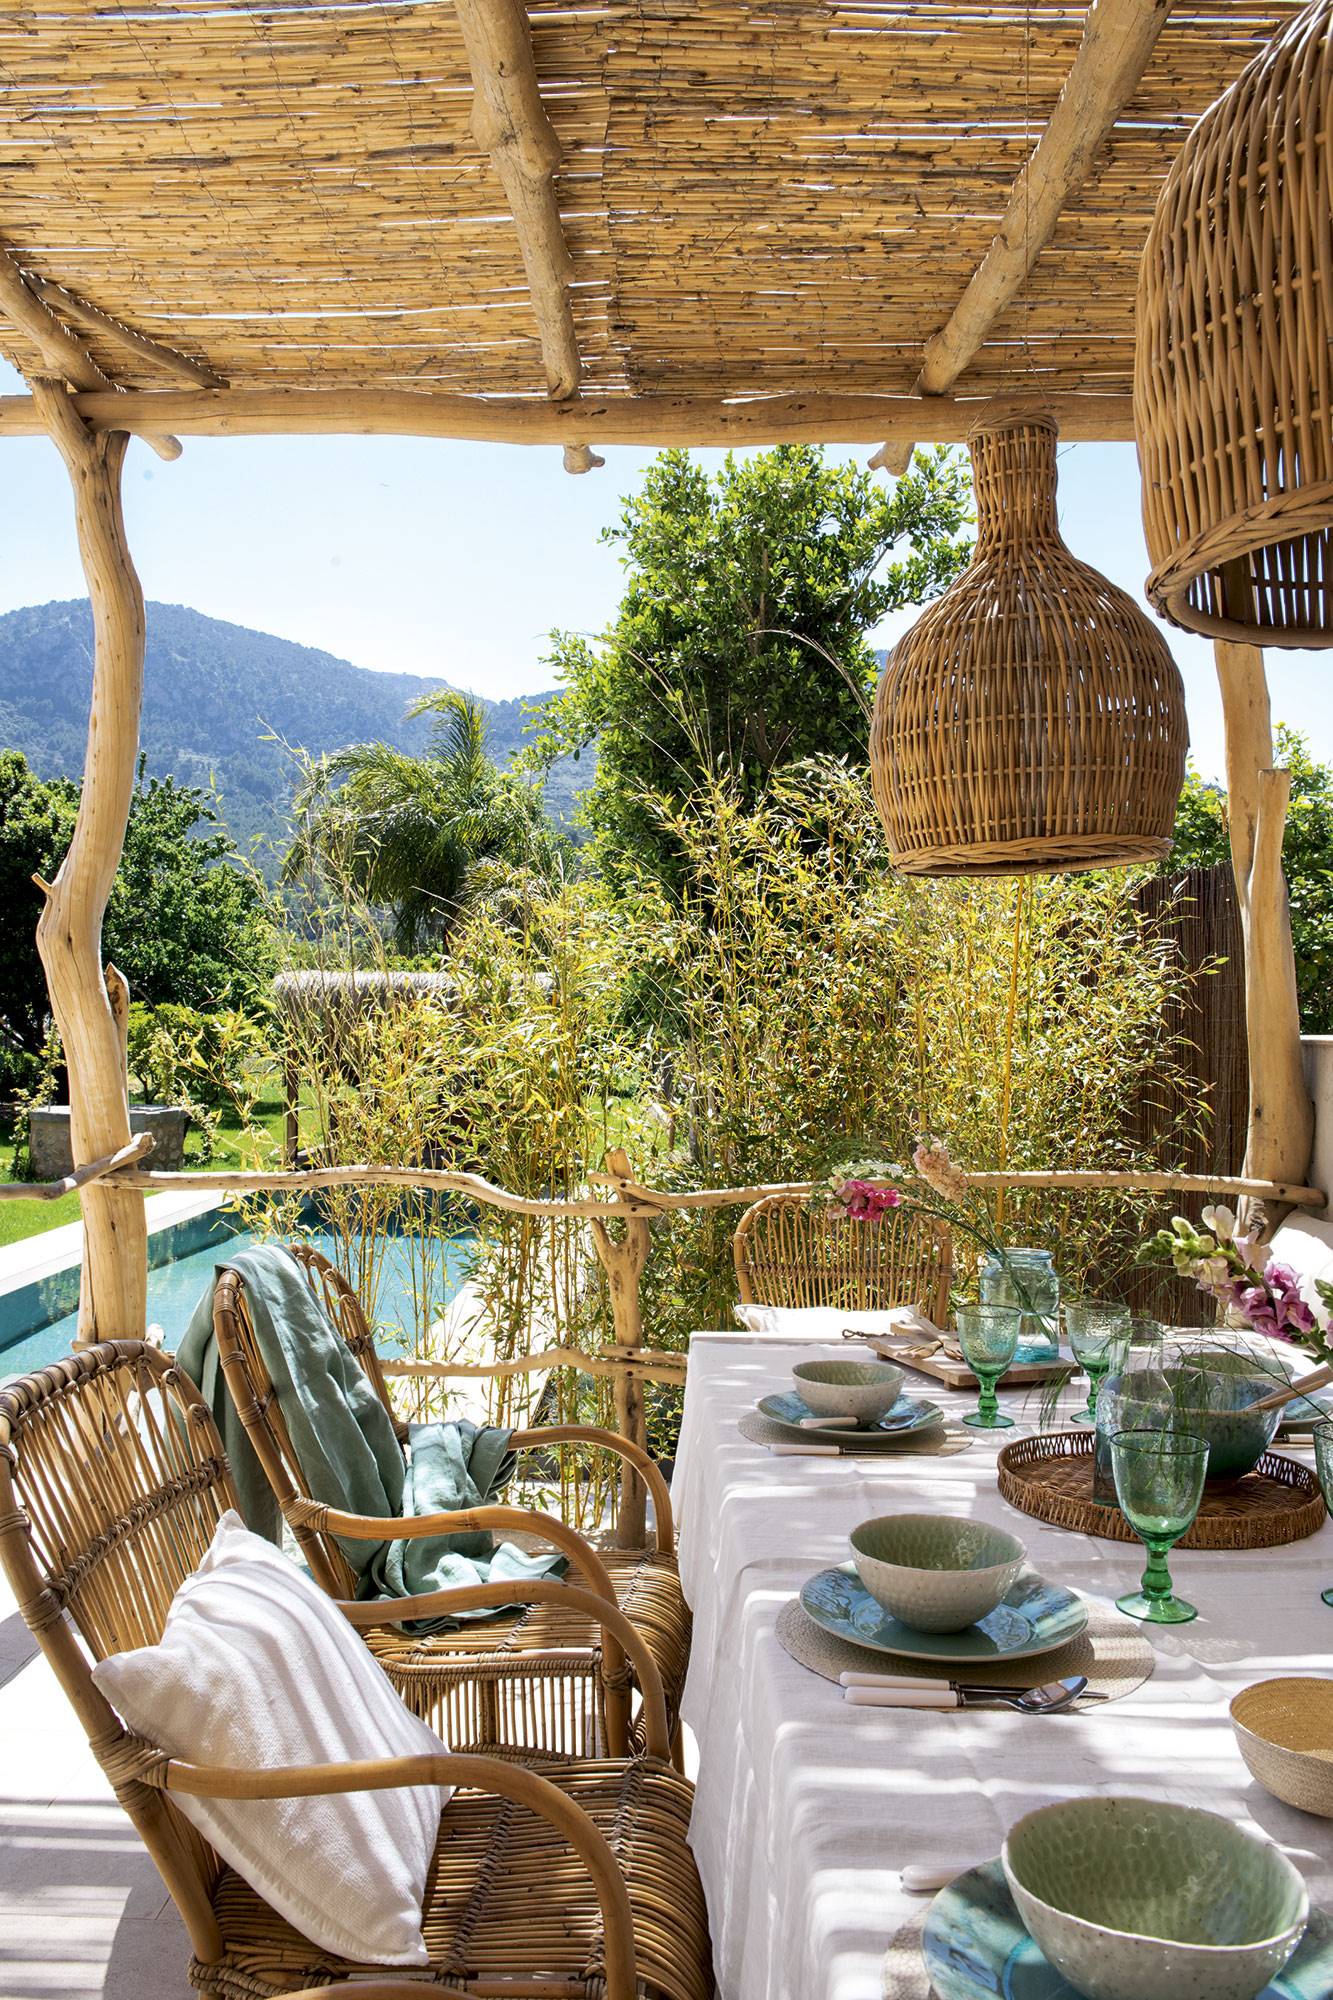 Comedor porche exterior rodeado de plantas de estilo mediterráneo. 